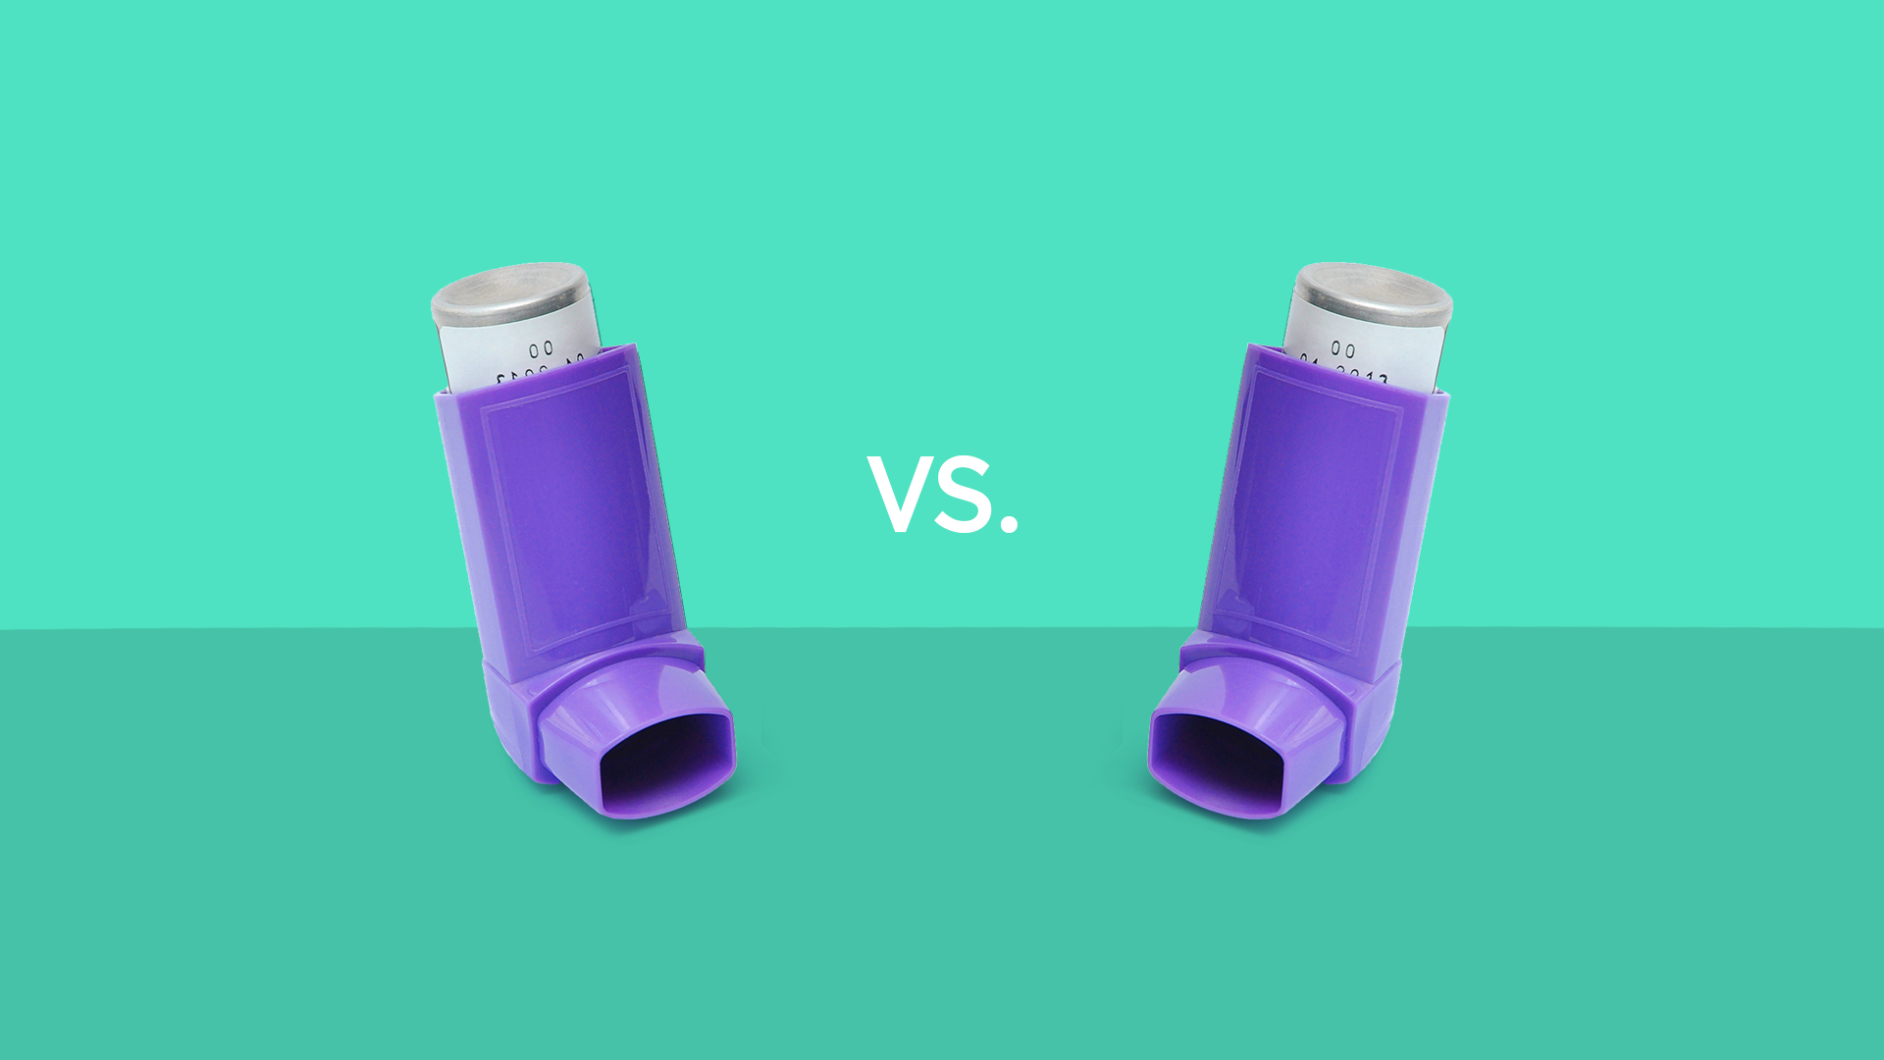 Incruse Ellipta vs Spiriva inhaler comparisons